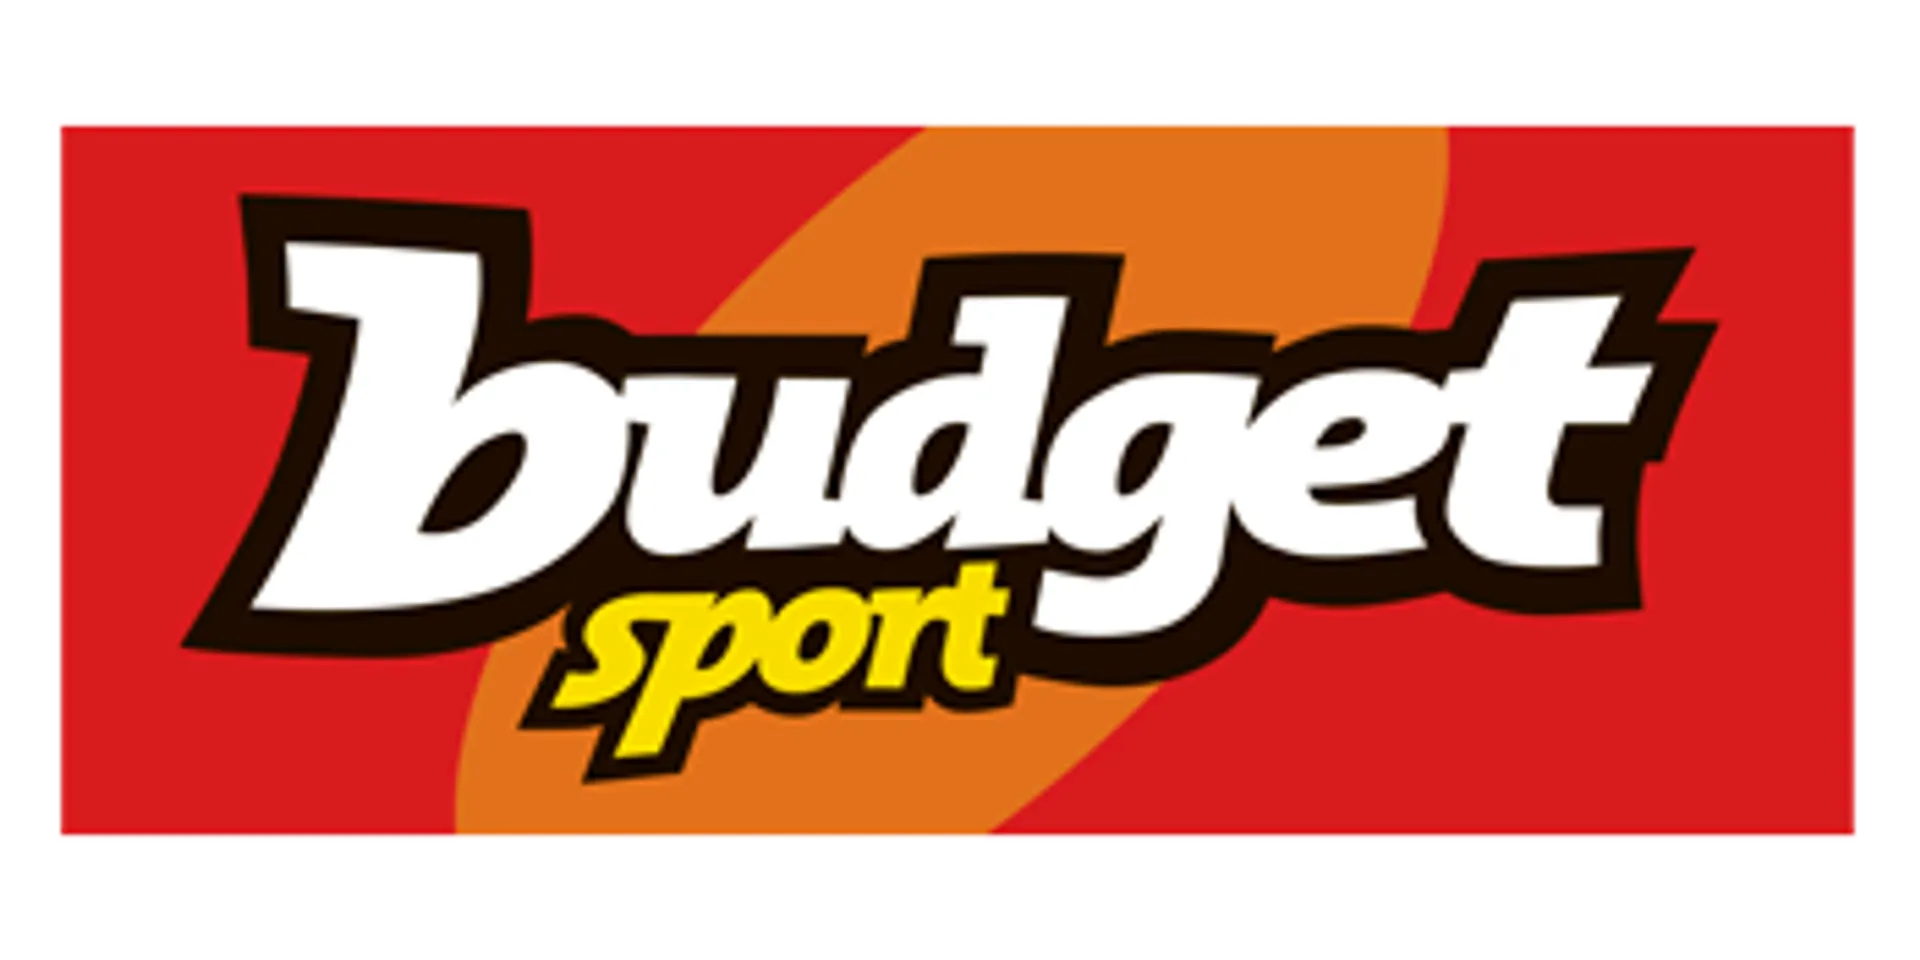 BUDGET SPORT logo